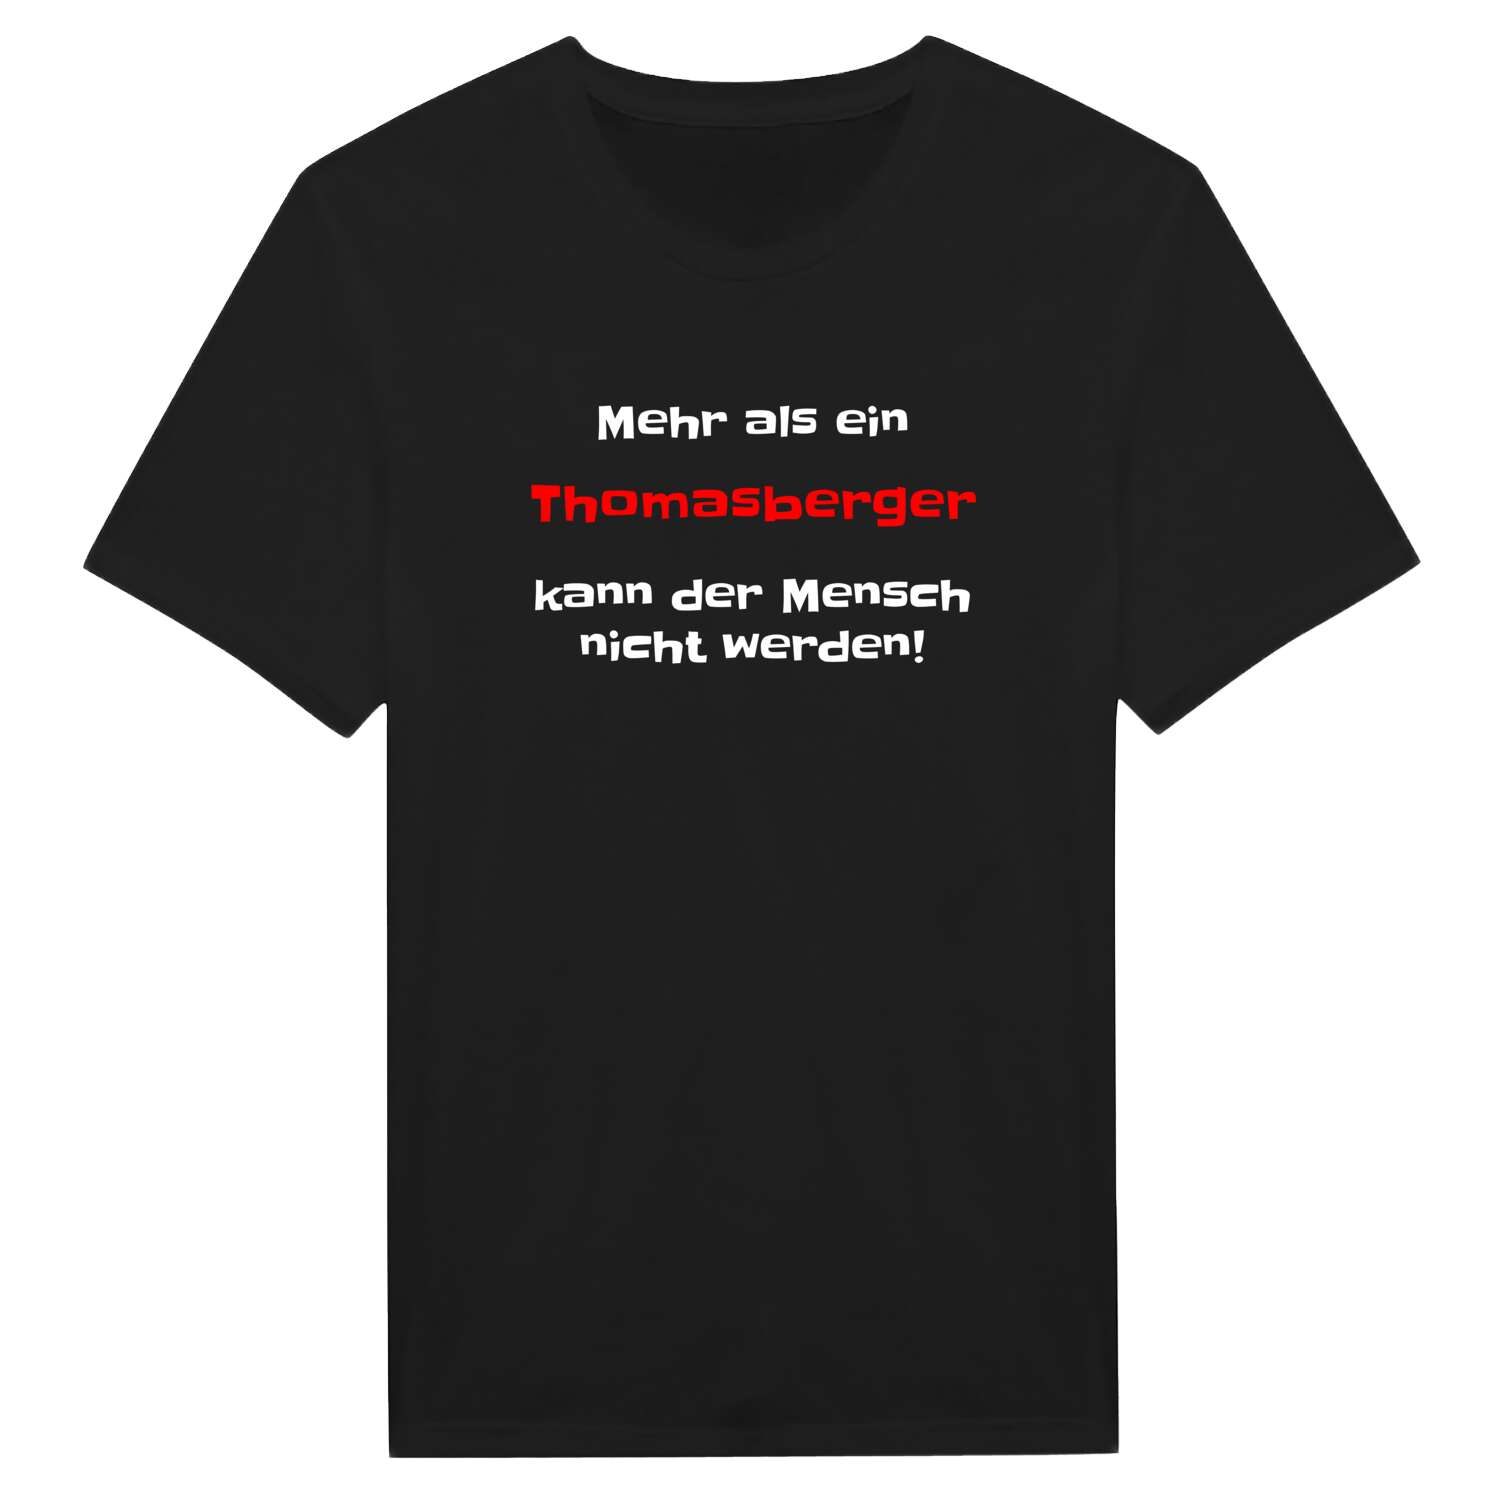 Thomasberg T-Shirt »Mehr als ein«